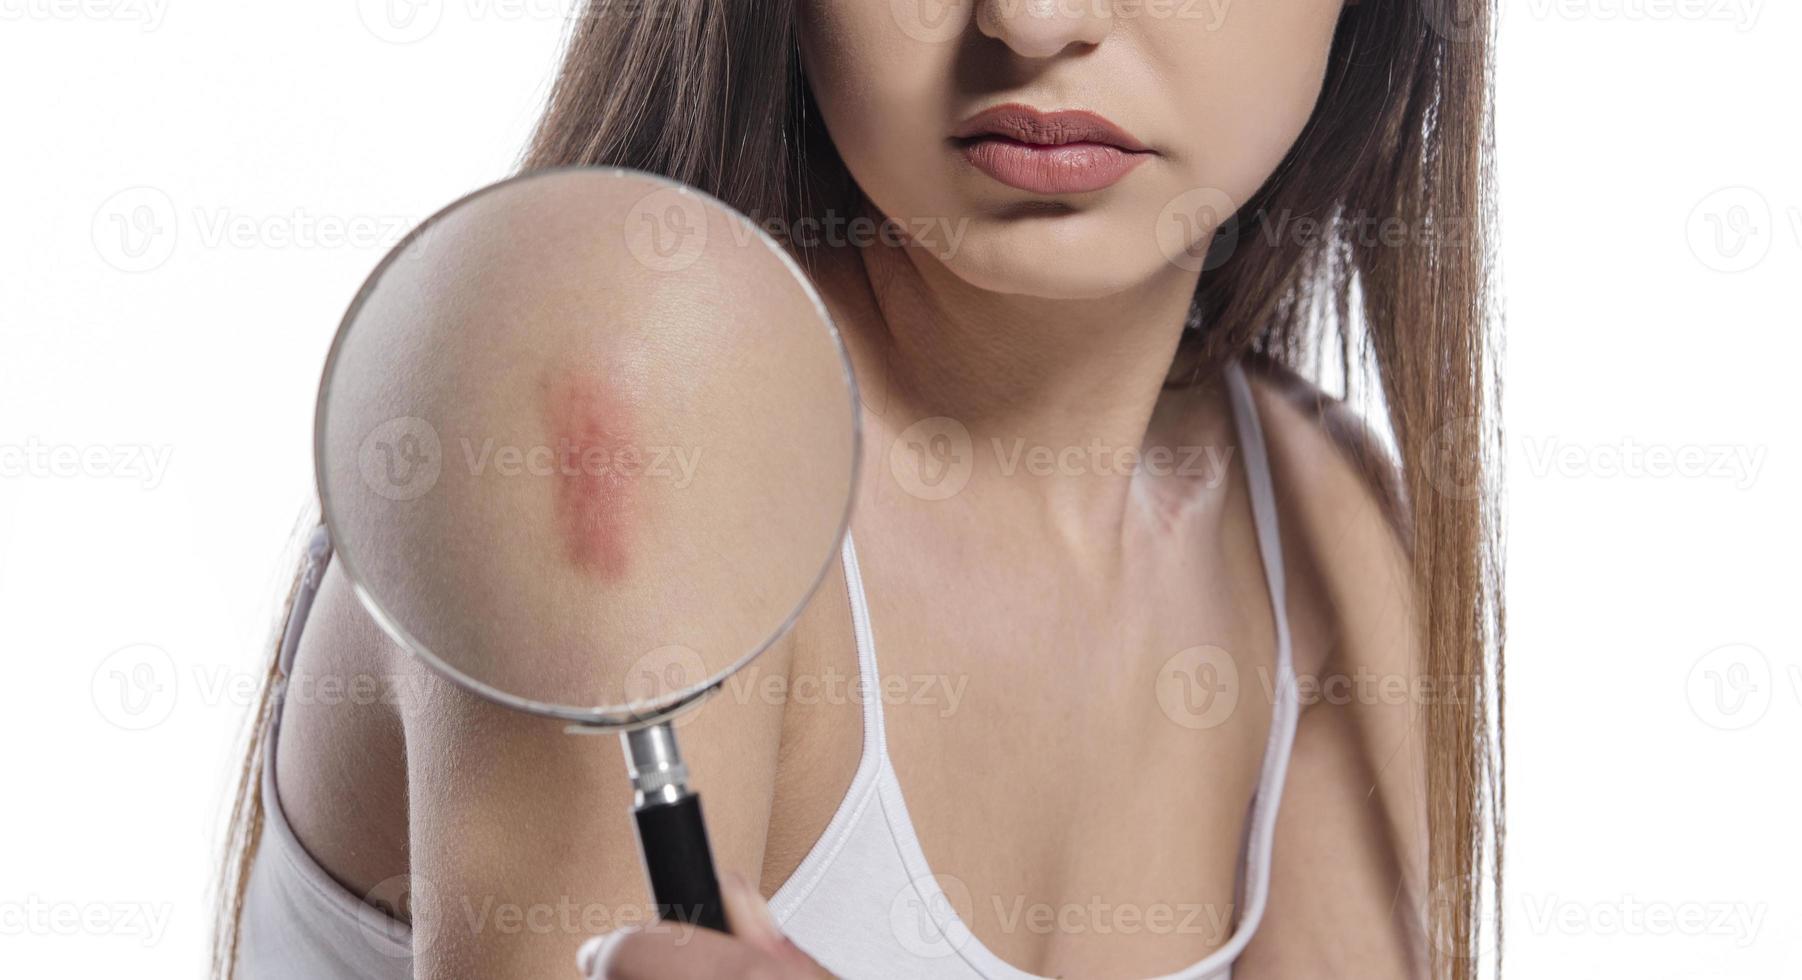 Frau mit großer hypertropher Narbe am rechten Oberarm aufgrund einer Verletzung oder Impfung foto